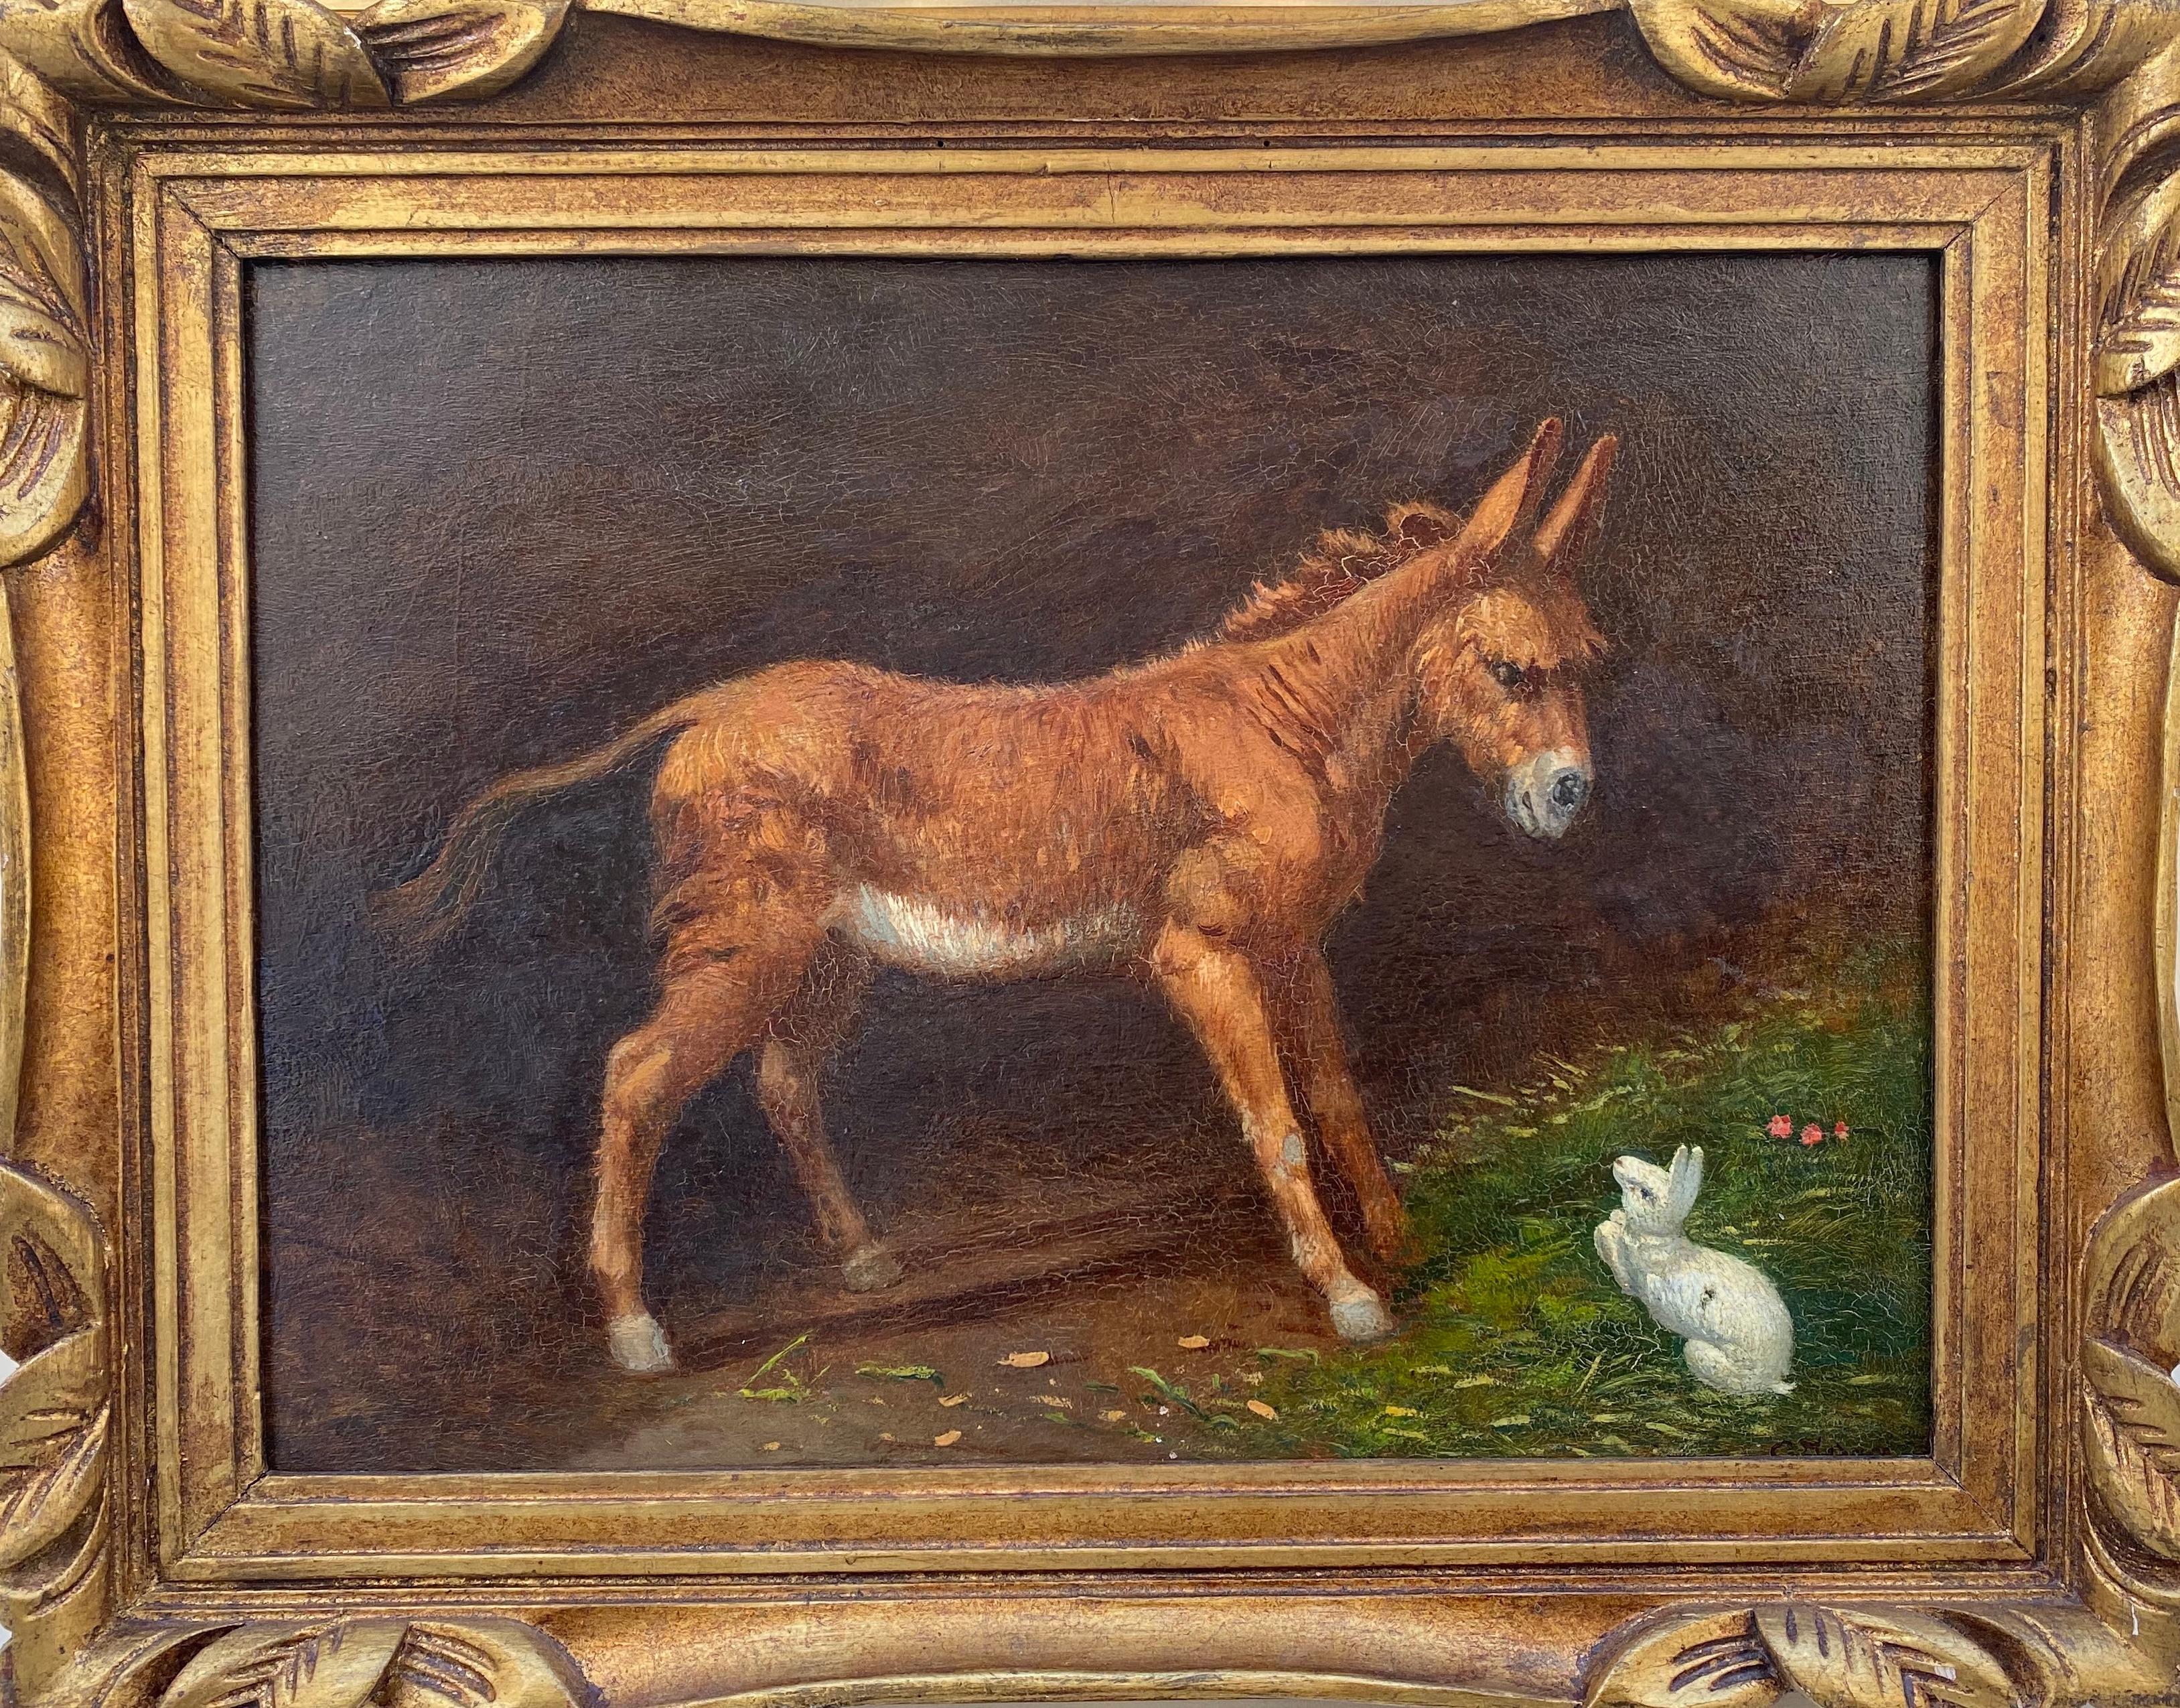 Animal Painting Gaetano Jerace - Petite mule et lapin blanc : peinture animalière équestre des années 1890 Novecento